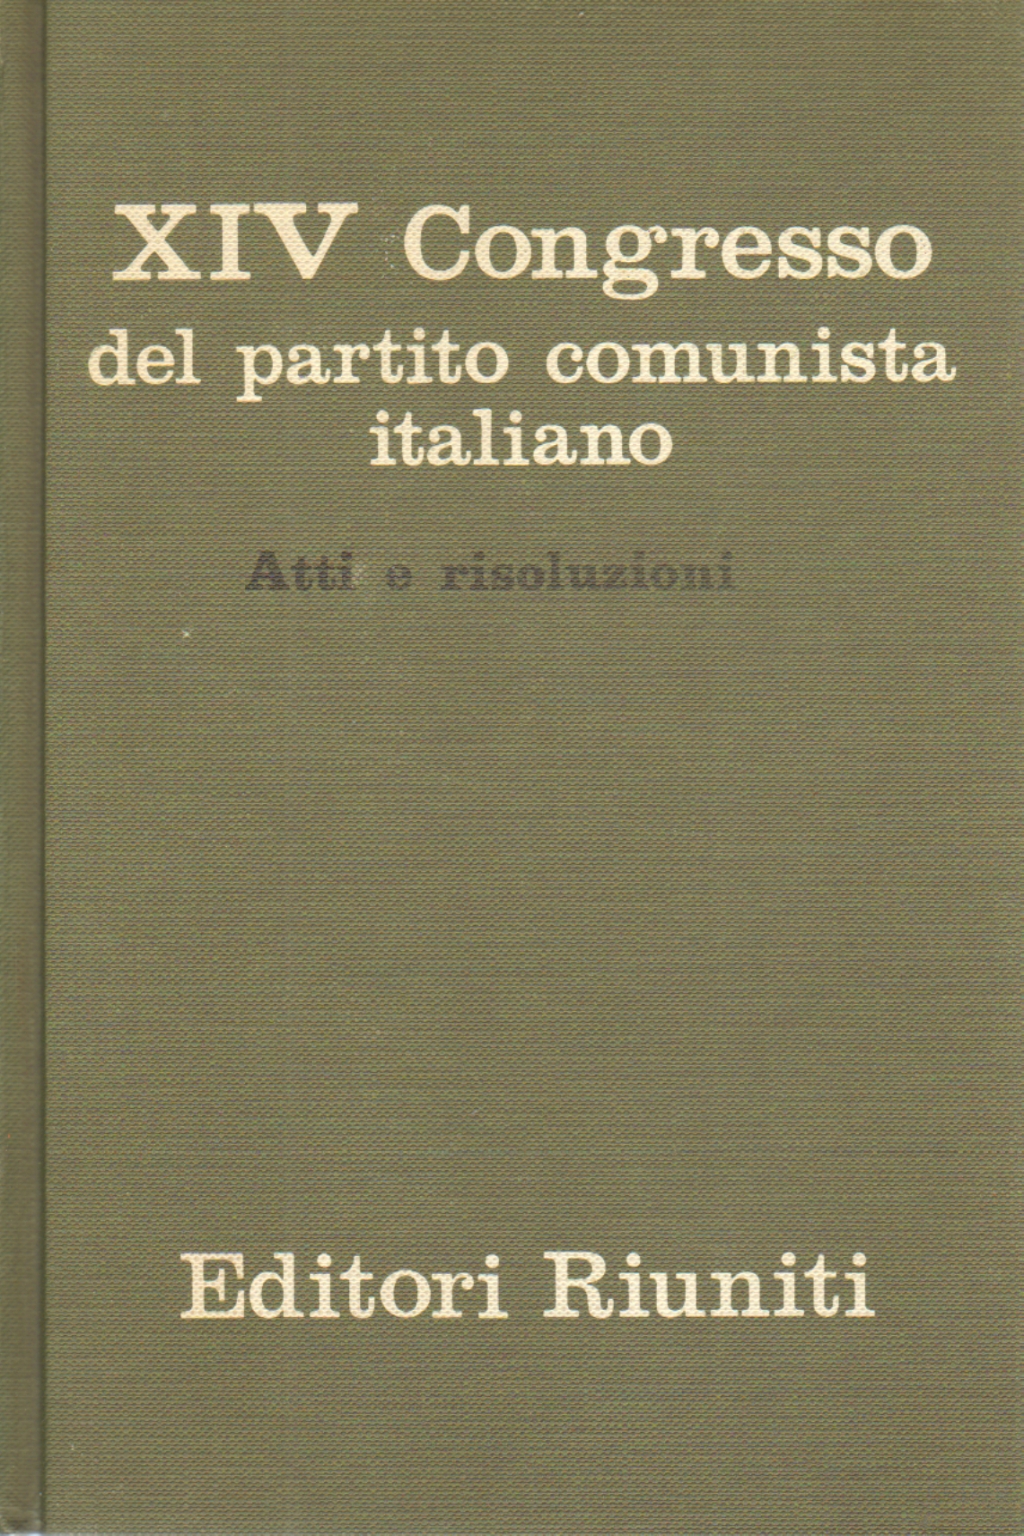 XIV Congresso del partito comunista italiano - Atti e risoluzioni | AA.VV. usato Politica e societ&#224; Ideologie e Teorie politiche